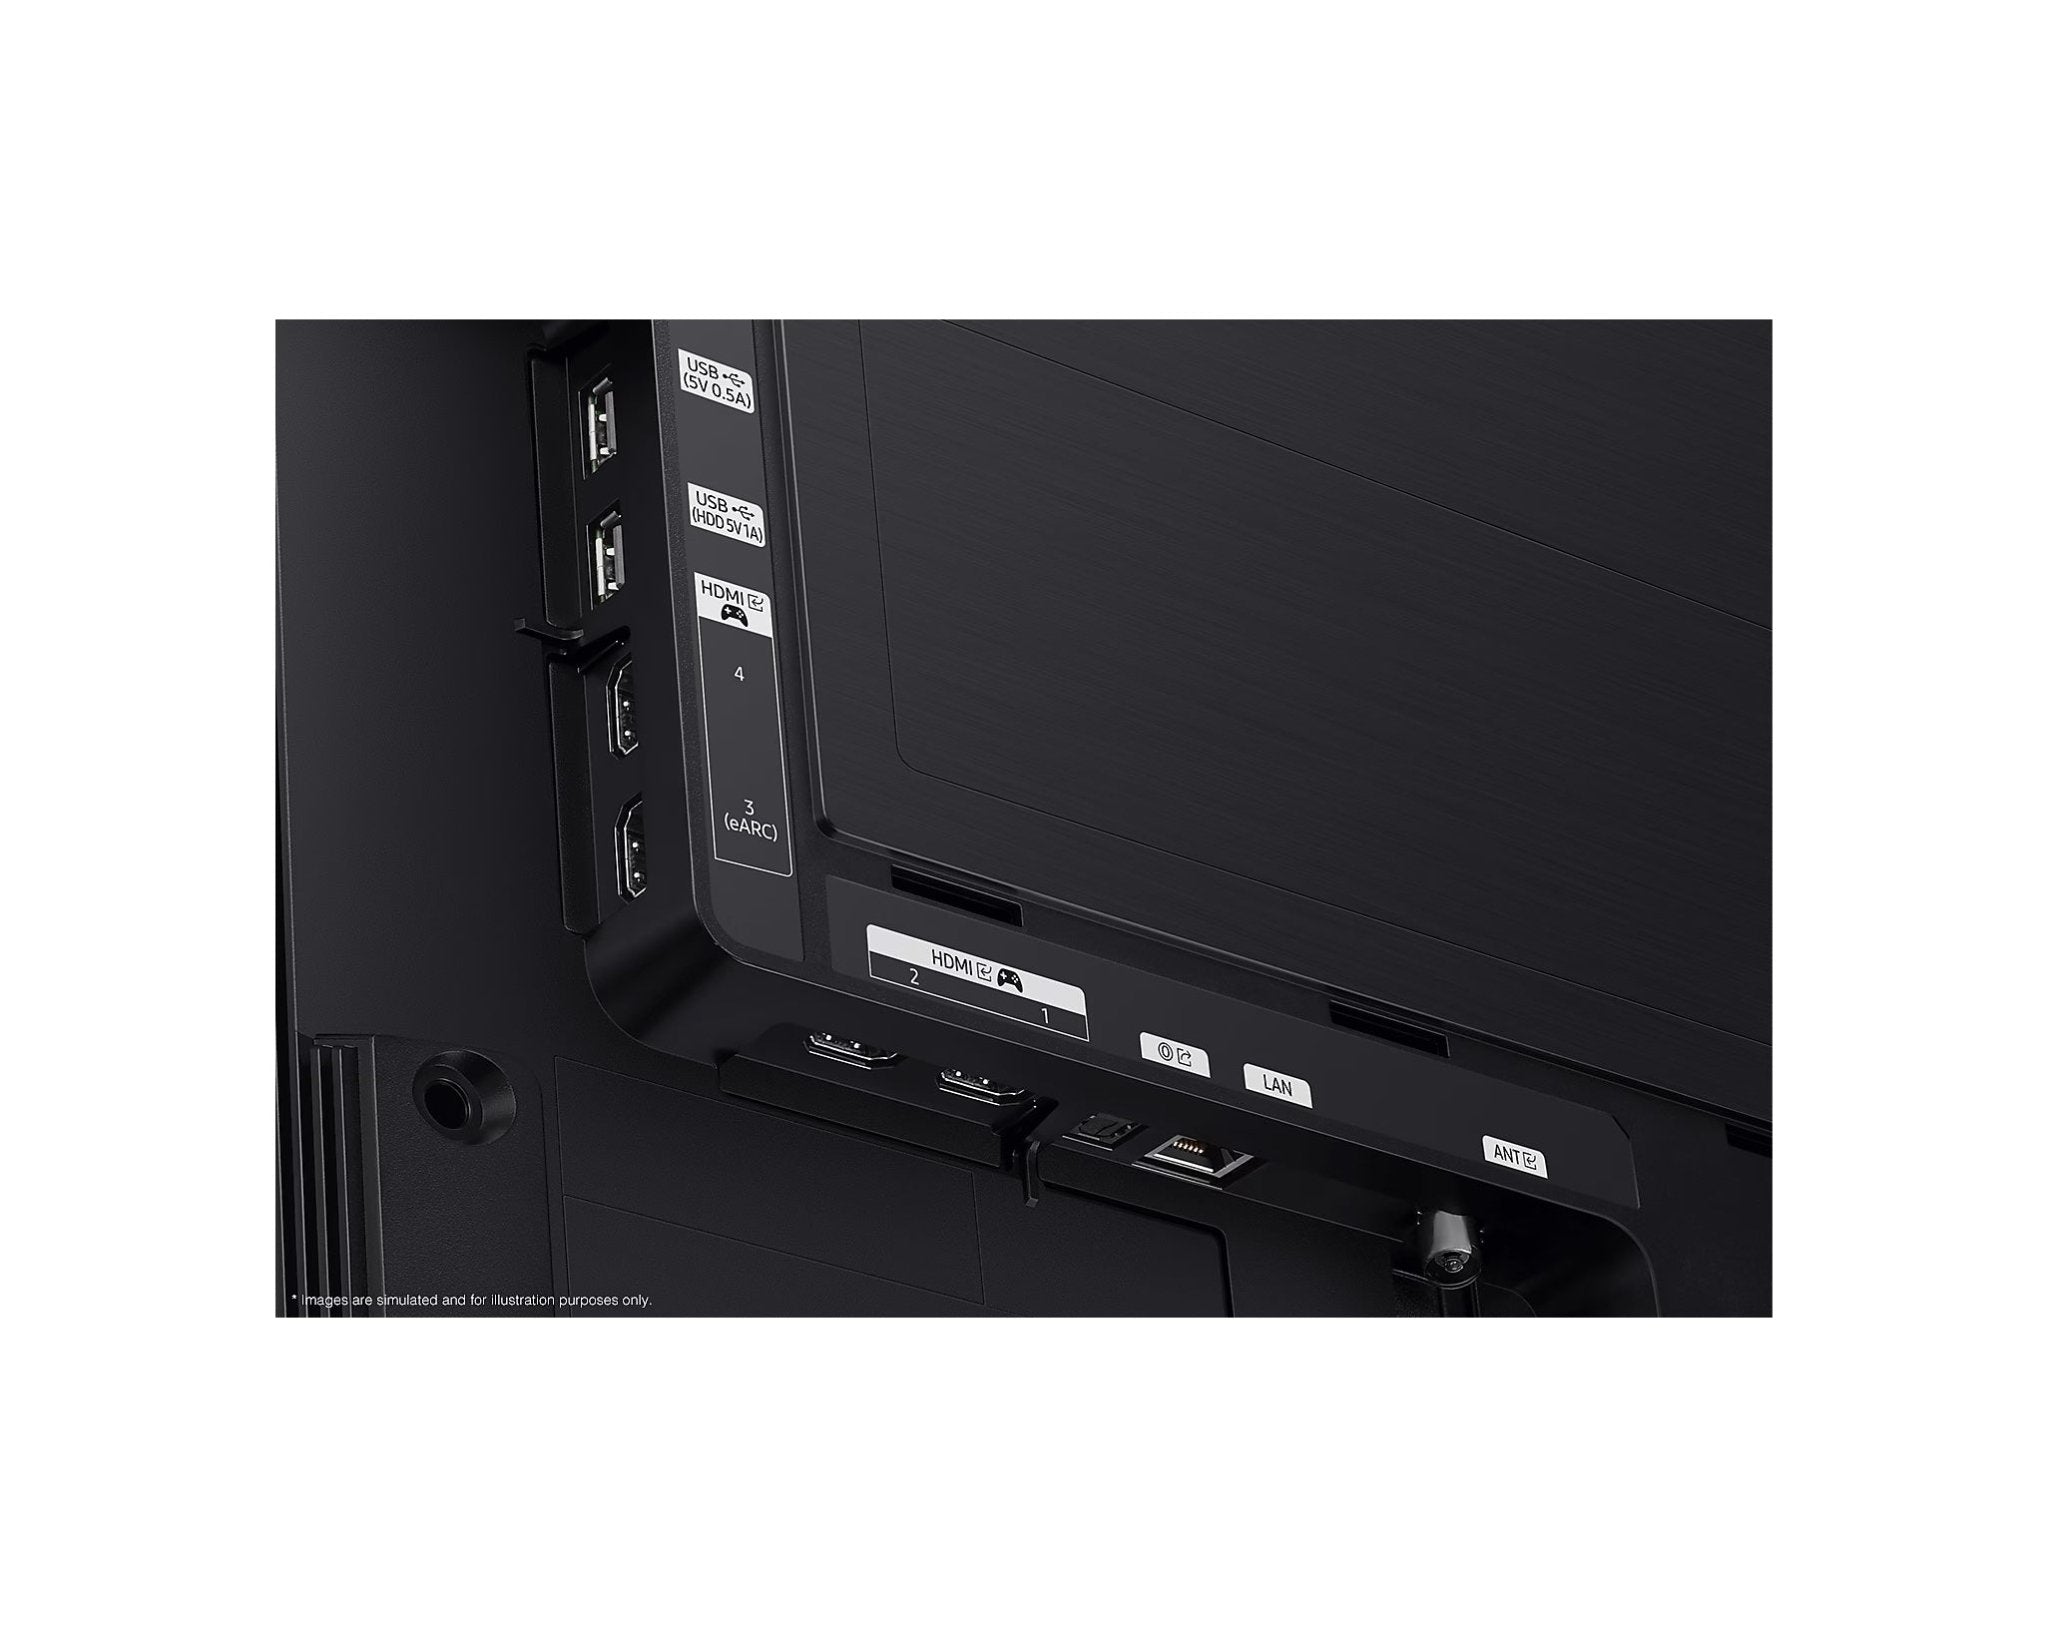 Samsung 三星 S90C 系列 4K OLED 電視 - Fever Electrics 電器熱網購平台